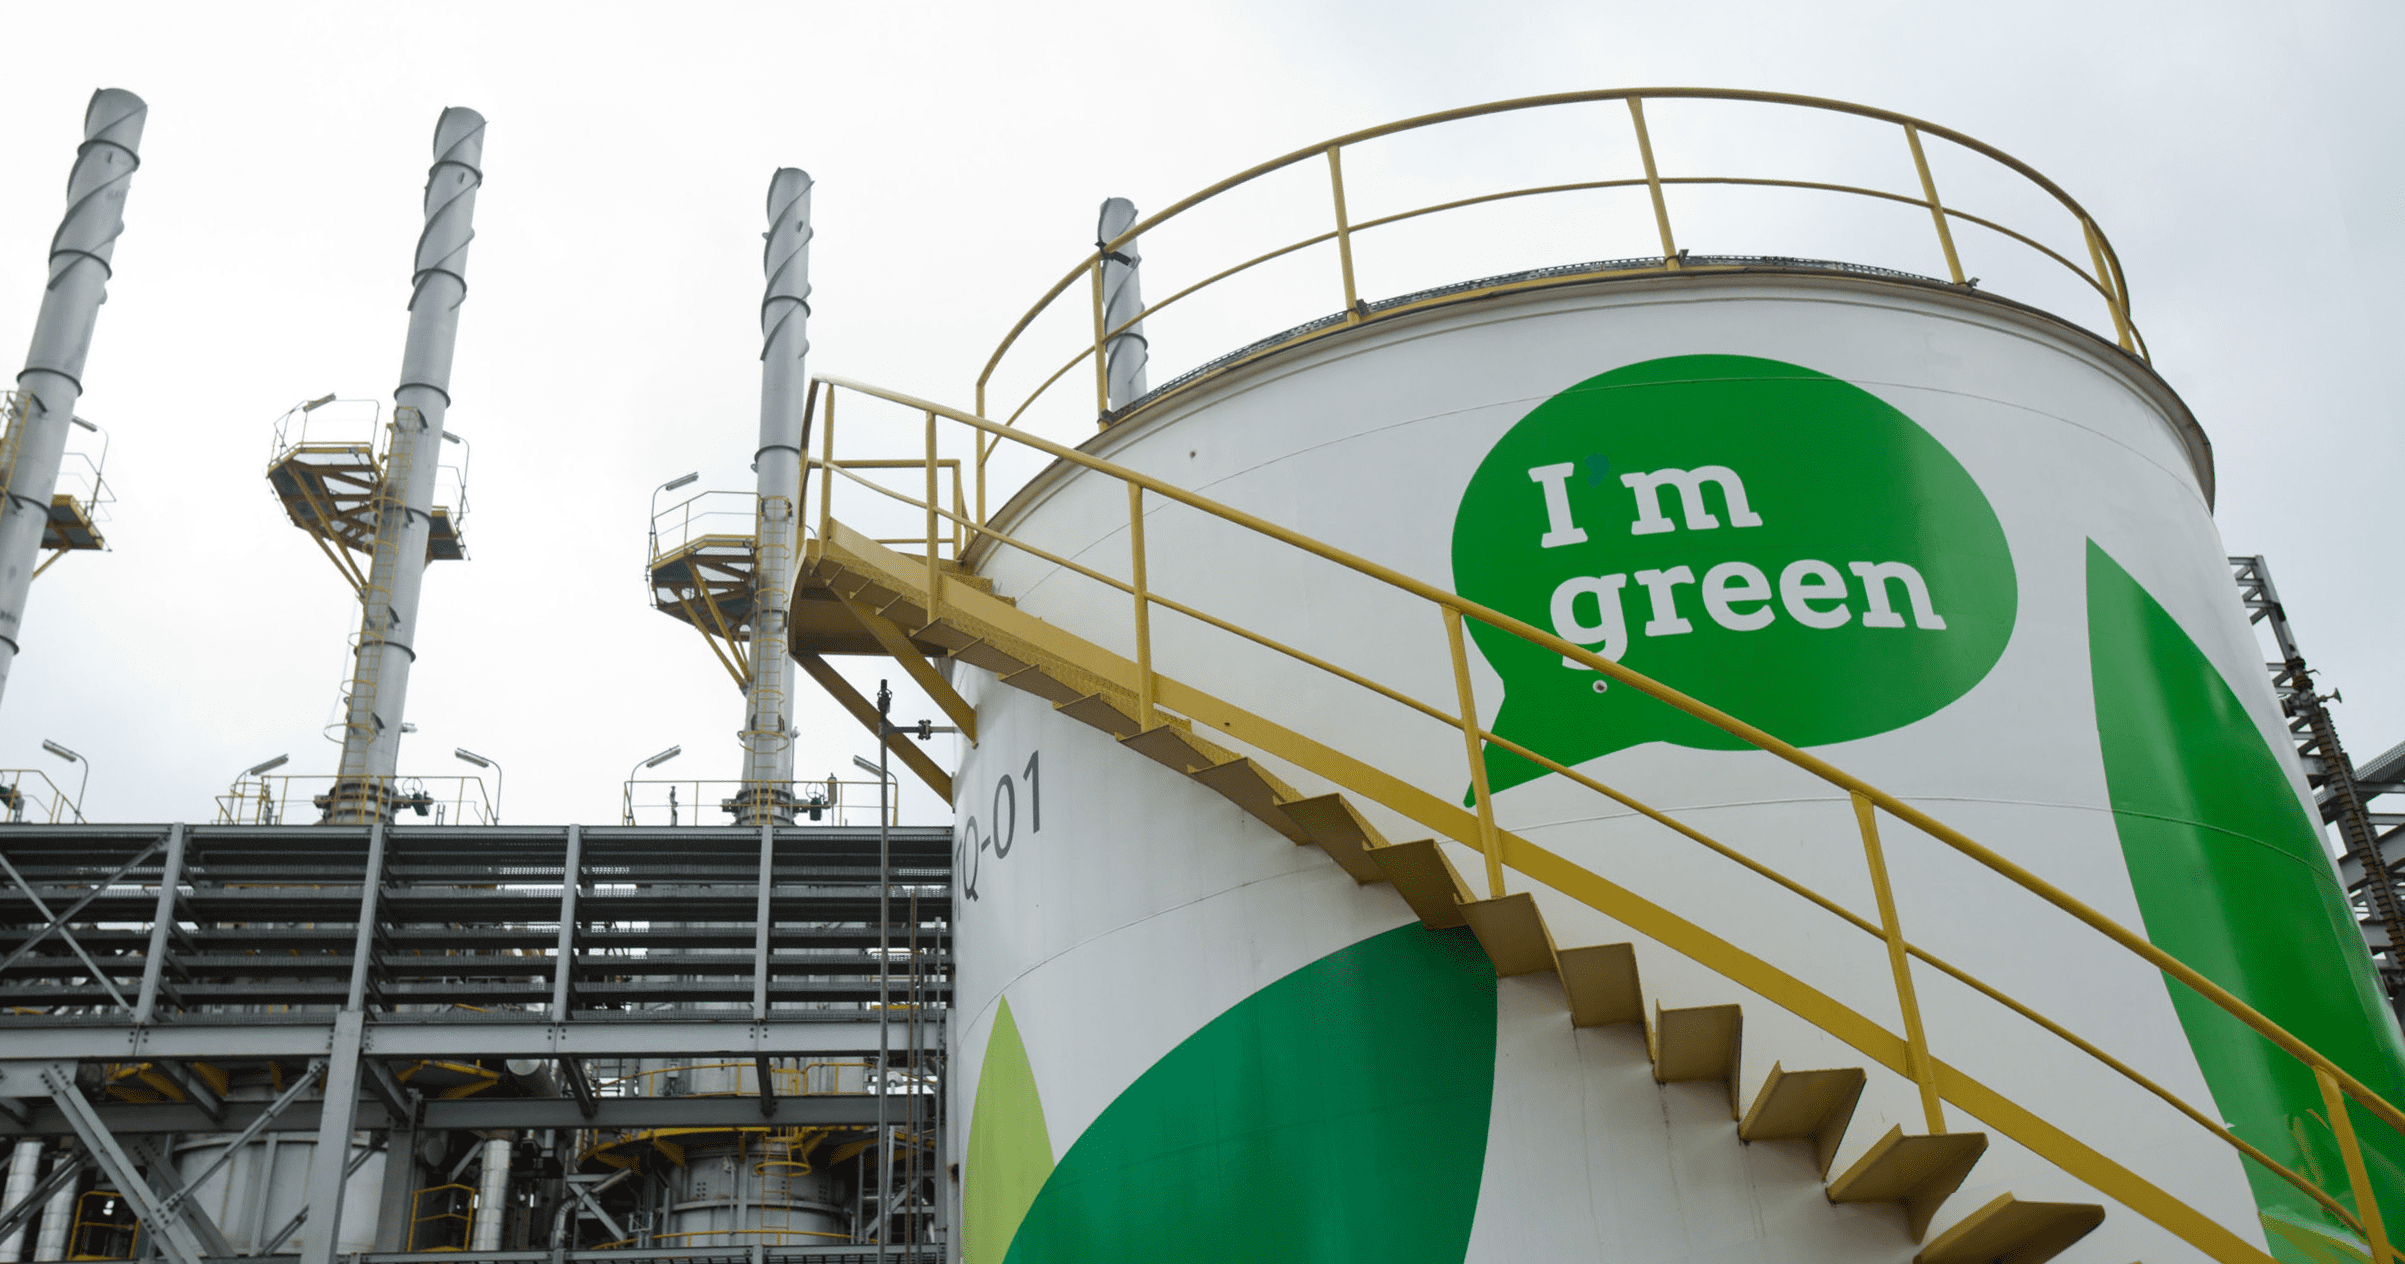 J&F entra na corrida pela Braskem. Na imagem: Grande tanque de armazenamento de bioetanol (etanol 2G) na área industrial da planta de renováveis e produção de plástico verde da Braskem em Triunfo, no RS (Foto: Julio Bittencourt/Divulgação)